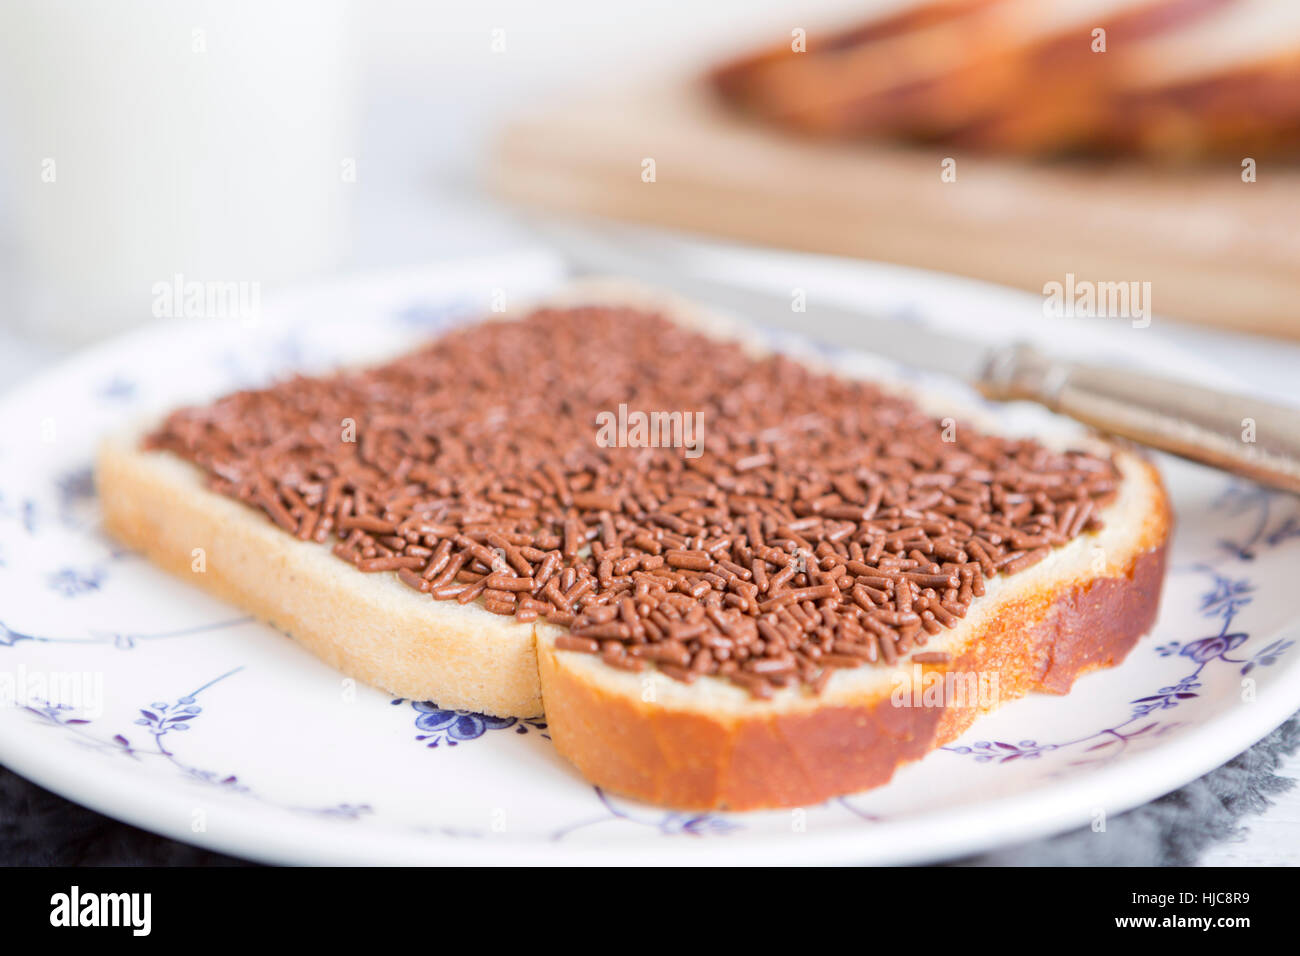 Ein Sandwich mit Schokostreuseln oder "Boterham traf Hagelslag", niederländische traditionelle Speisen. Stockfoto